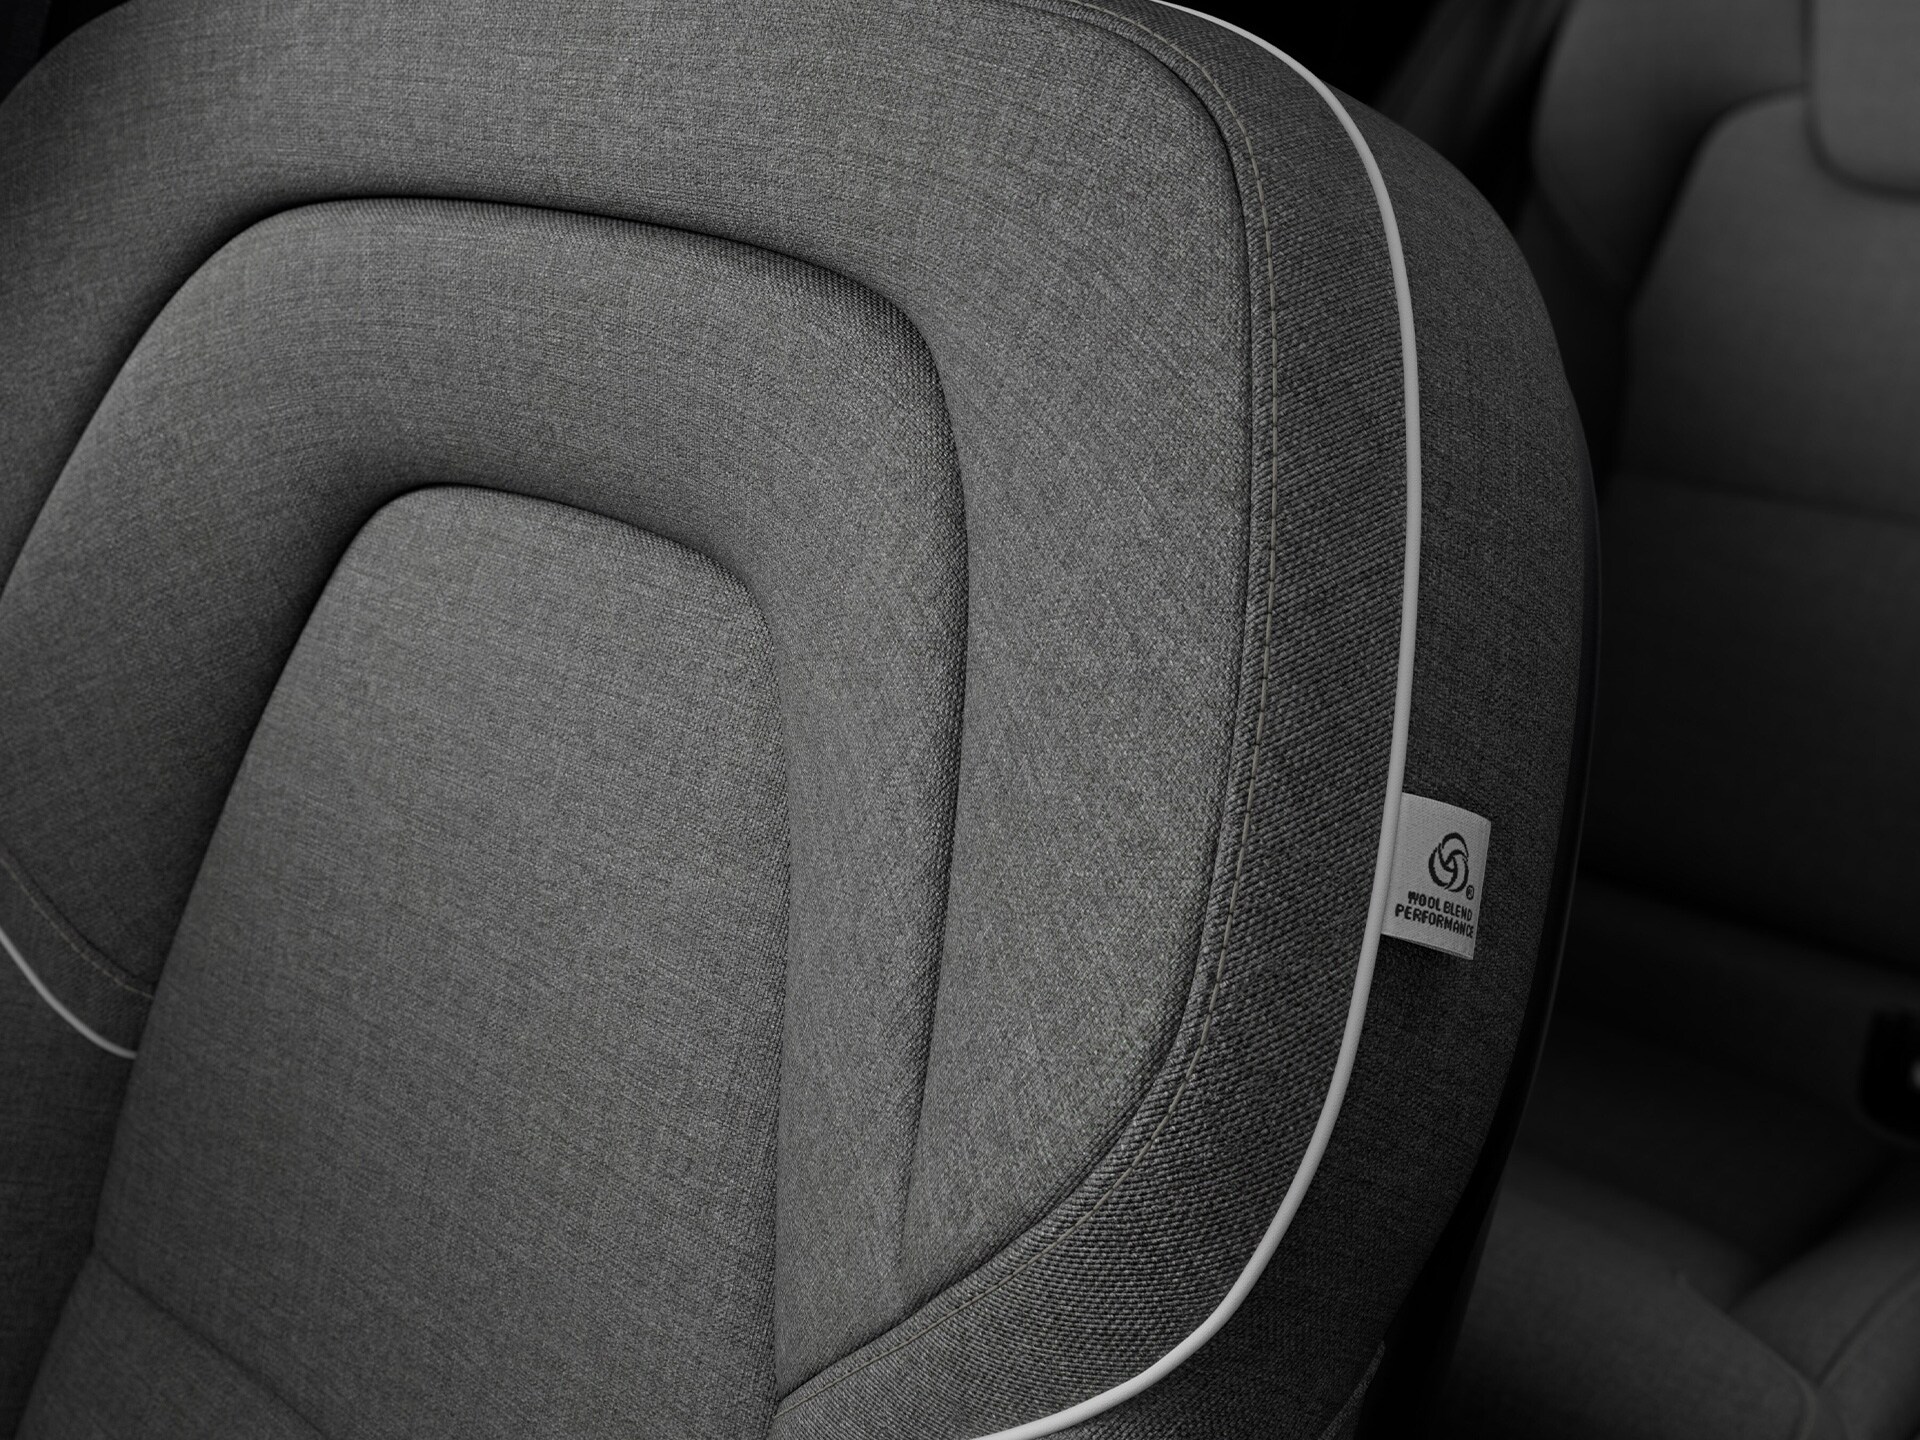 Håndværk og naturlige materialer definerer interiøret i Volvo V90 Recharge.